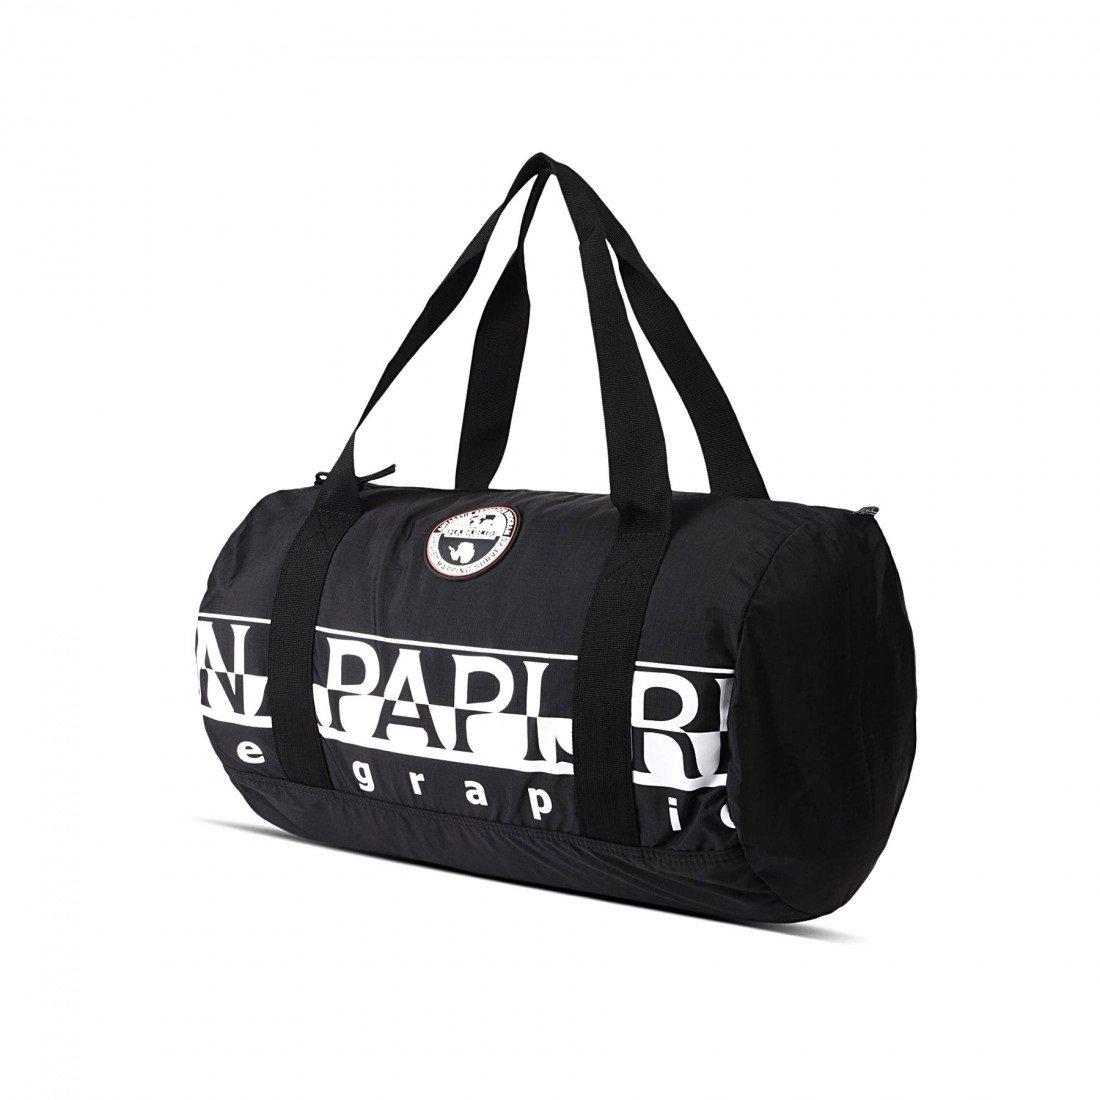 Napapijri Black Travel Bags Bering Pack 26.5lt for Men - Lyst